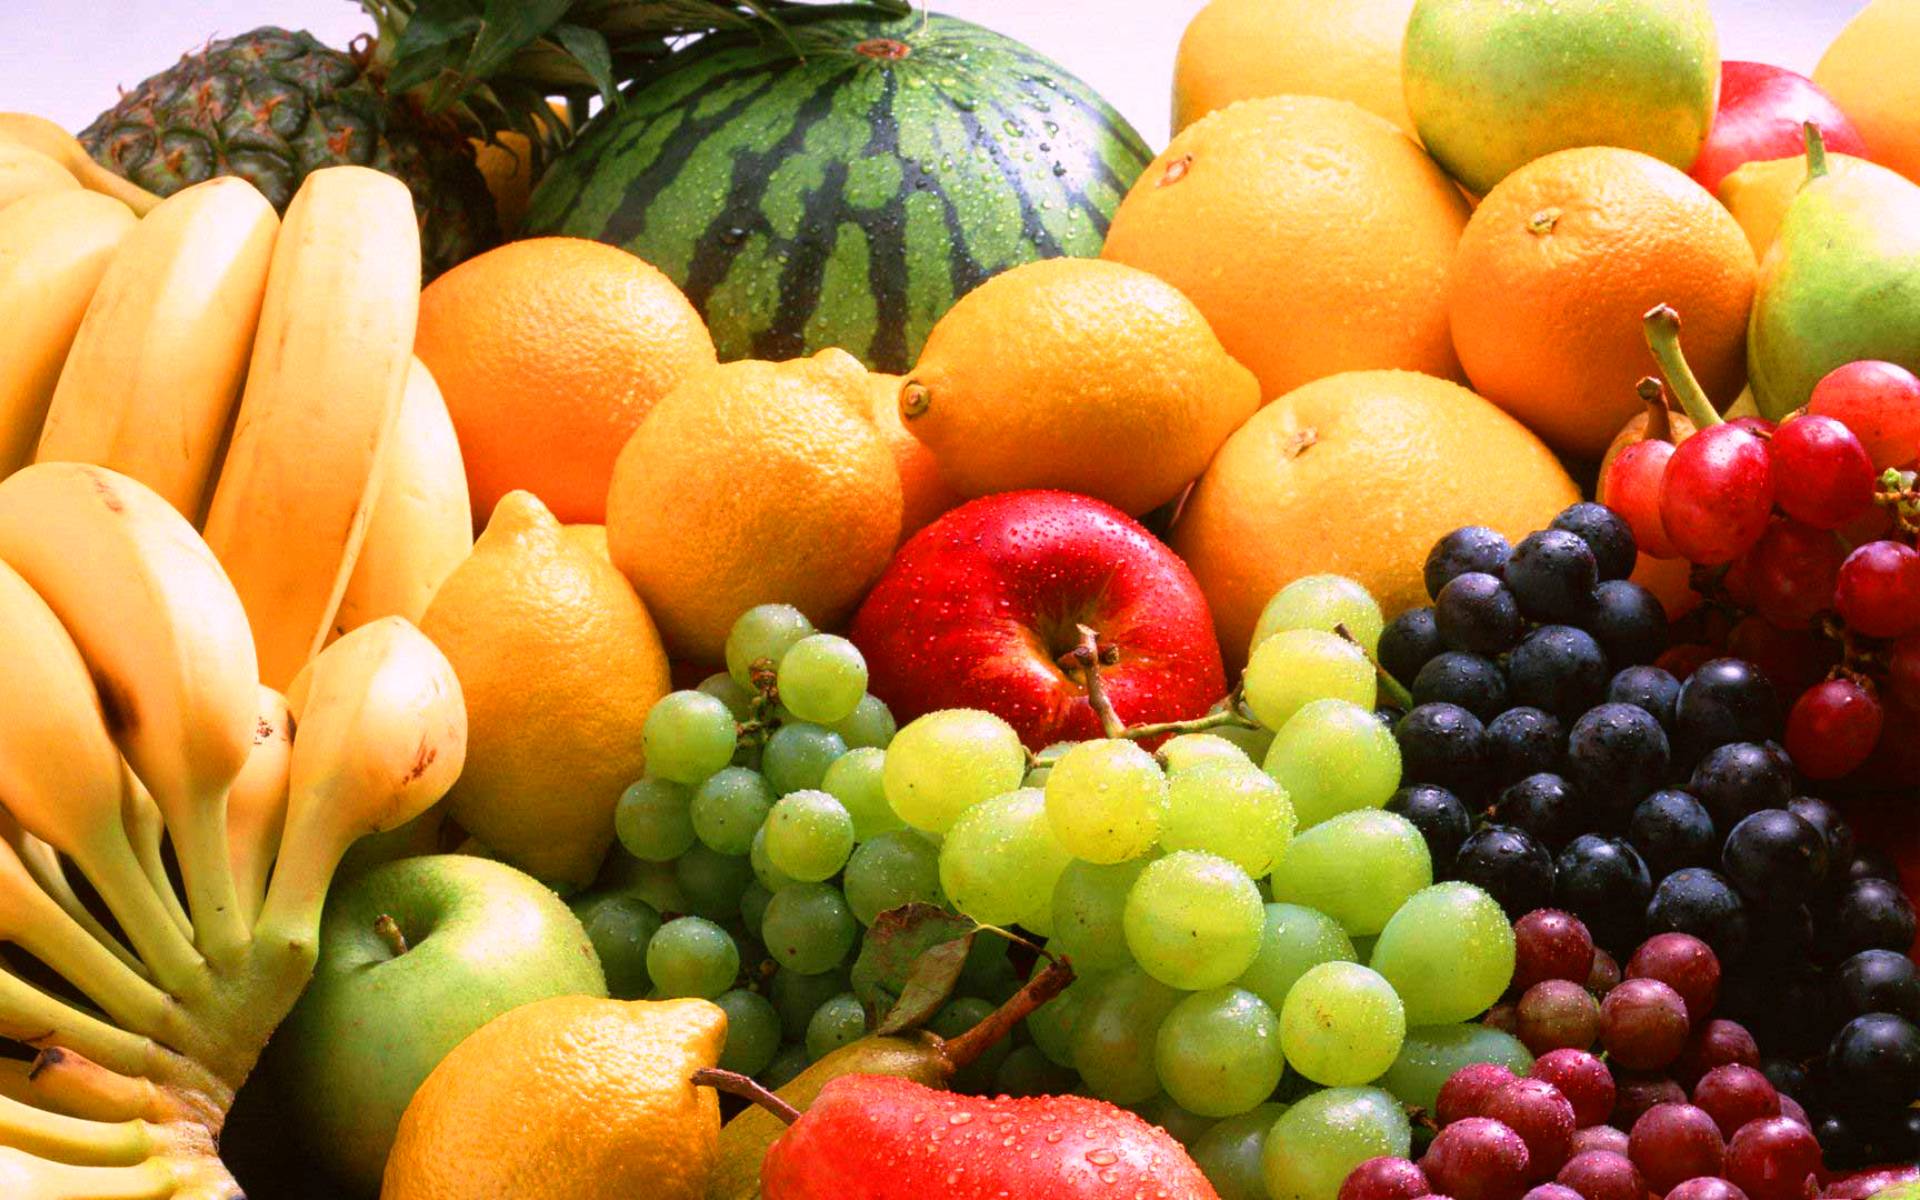 Analiza importu owoców i warzyw • East Fruit